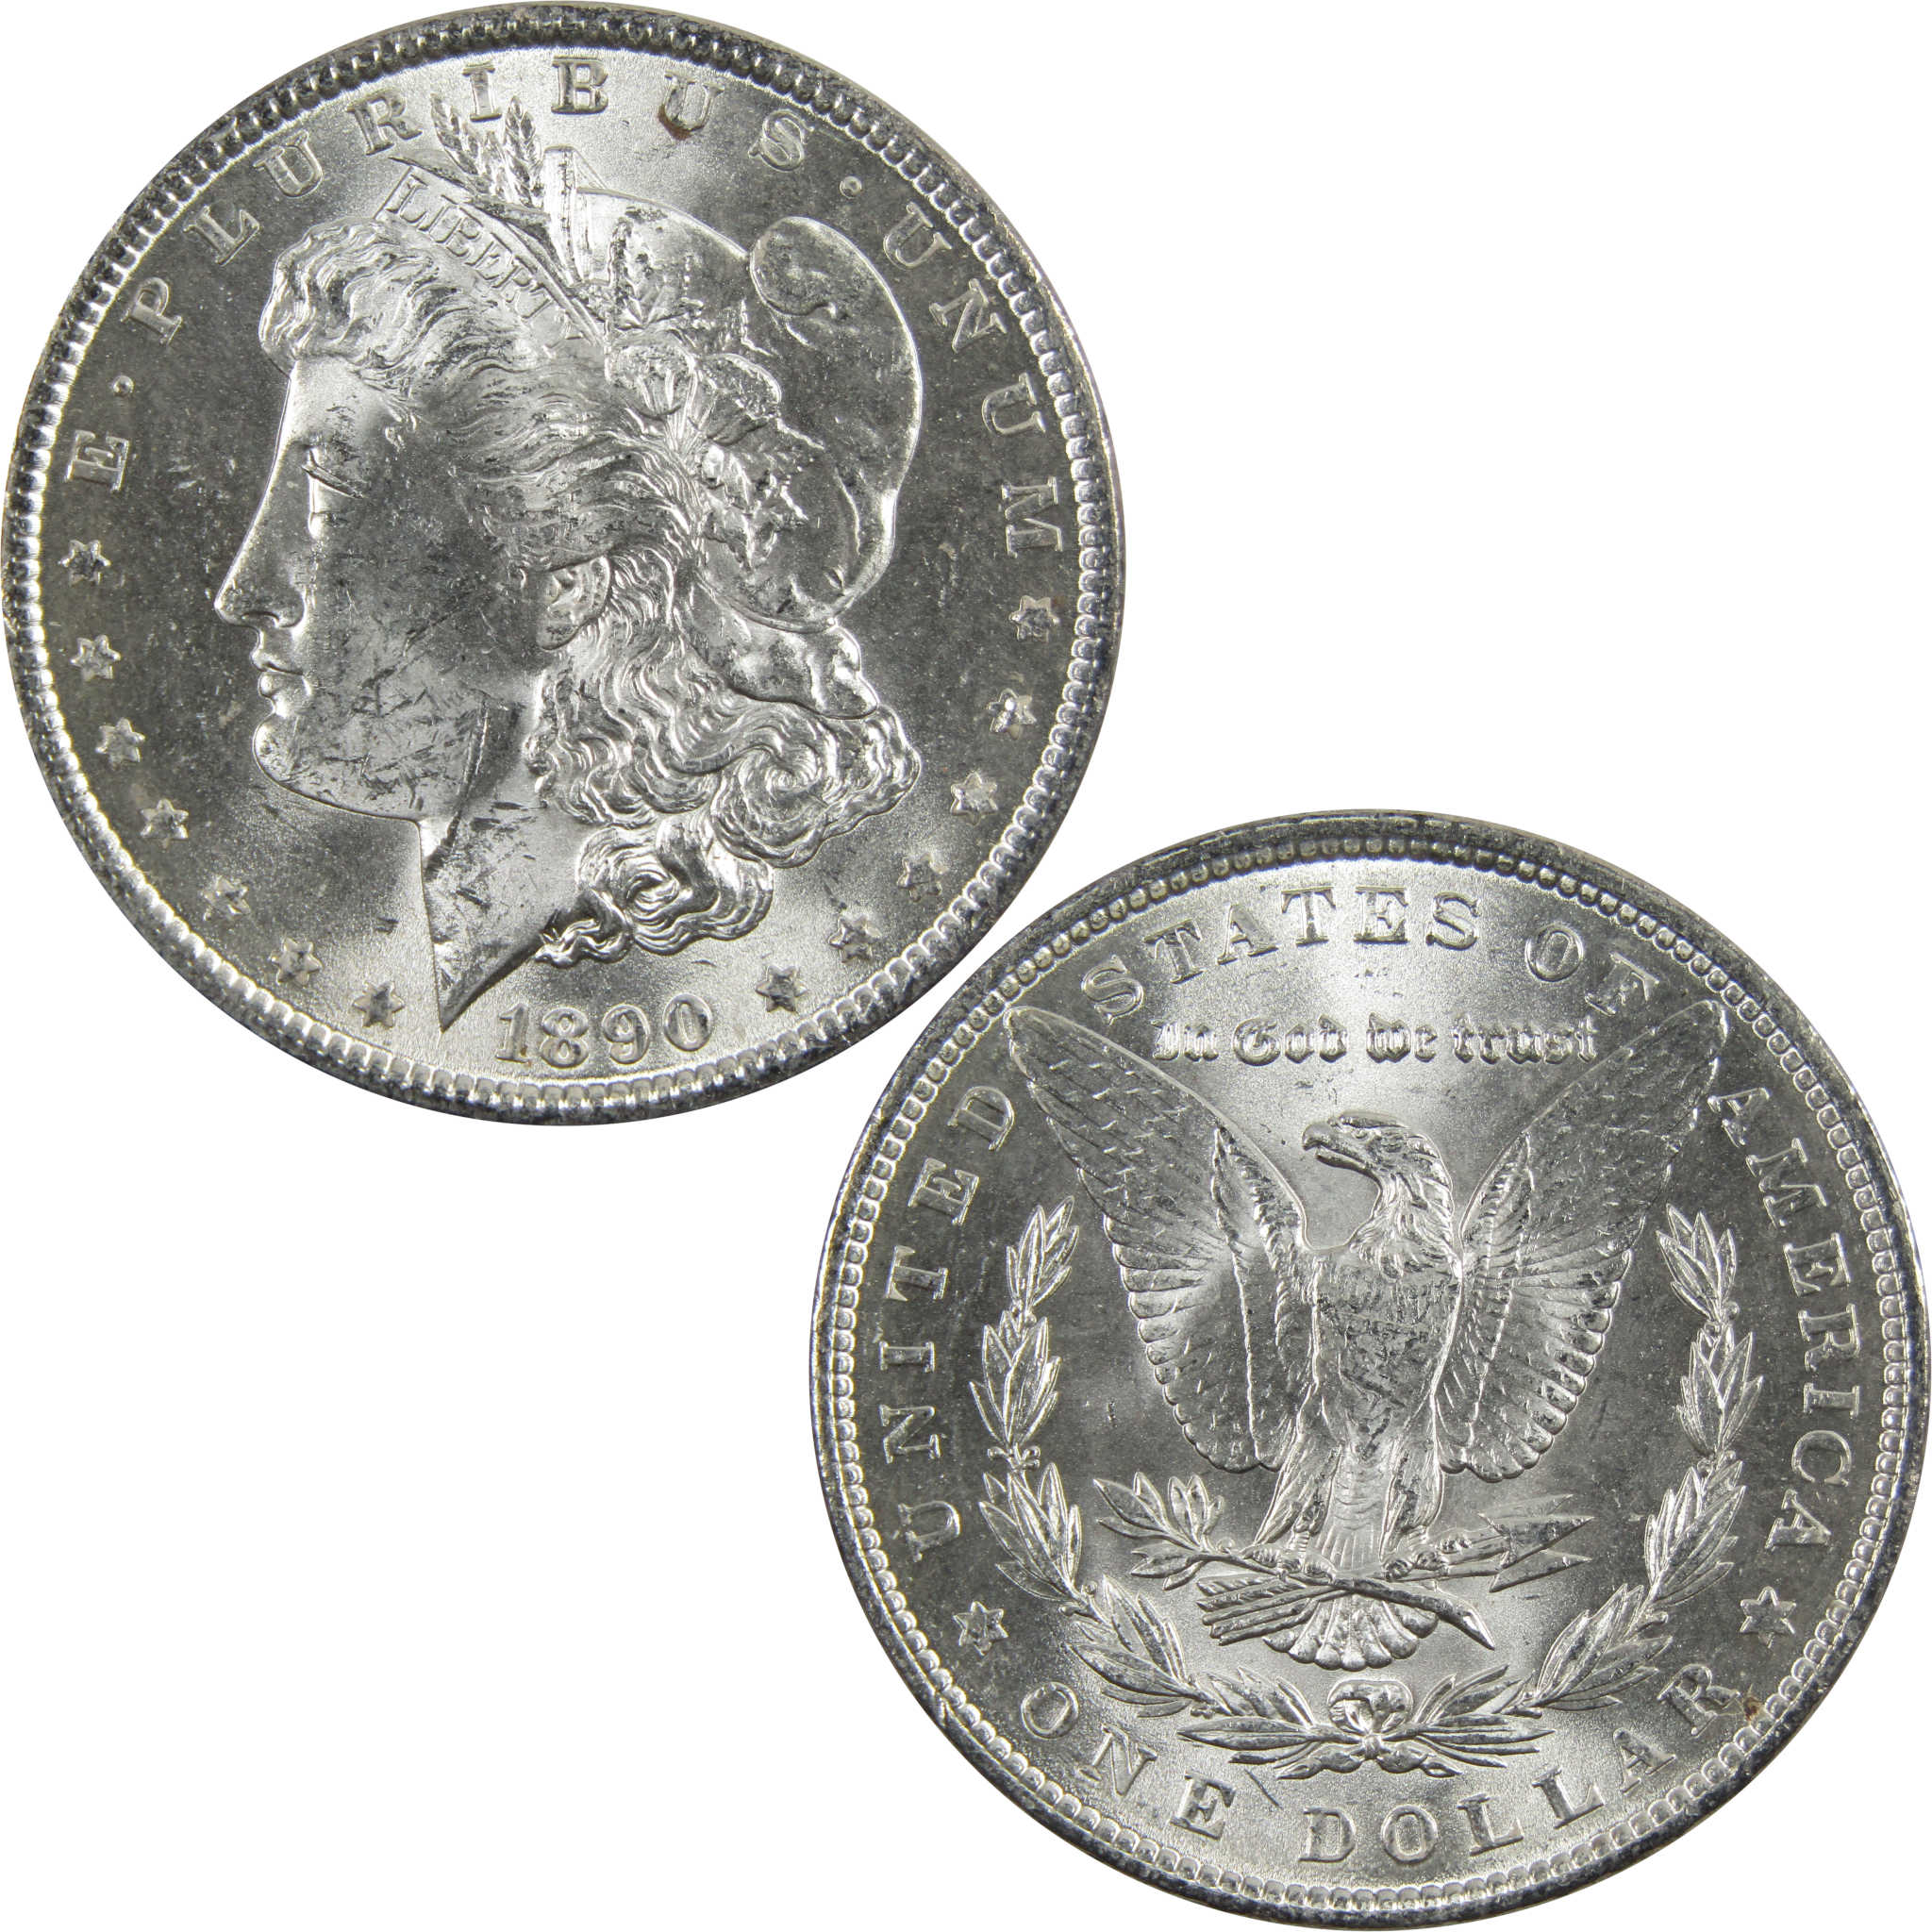 1890 Morgan Dollar BU Uncirculated 90% Silver $1 Coin SKU:I5143 - Morgan coin - Morgan silver dollar - Morgan silver dollar for sale - Profile Coins &amp; Collectibles